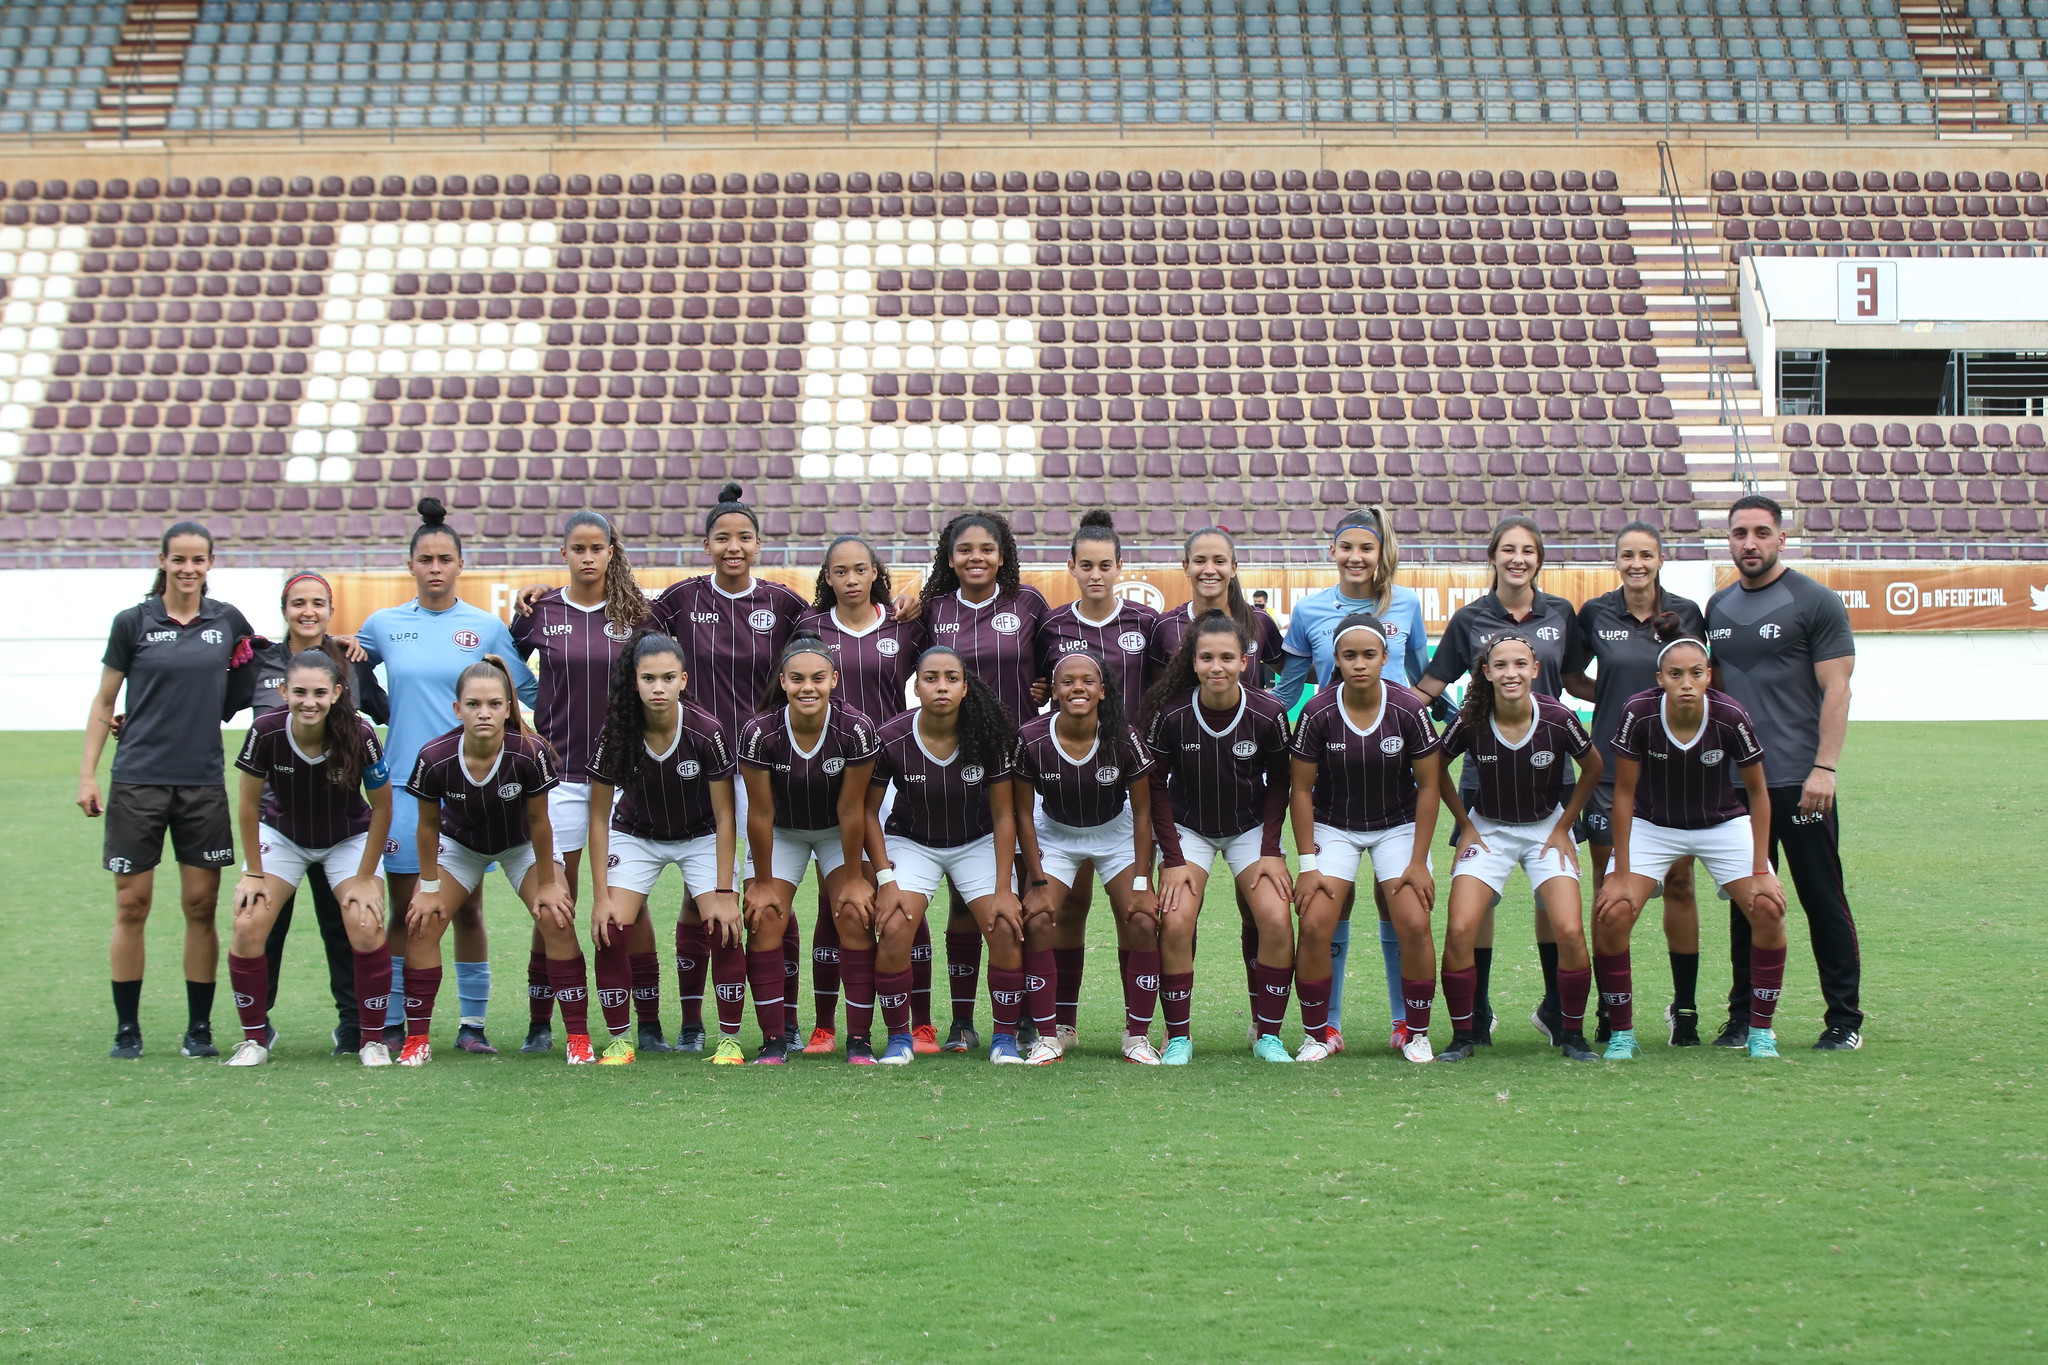 Futebol Feminino - Se liga na convocação da Seleção Brasileira